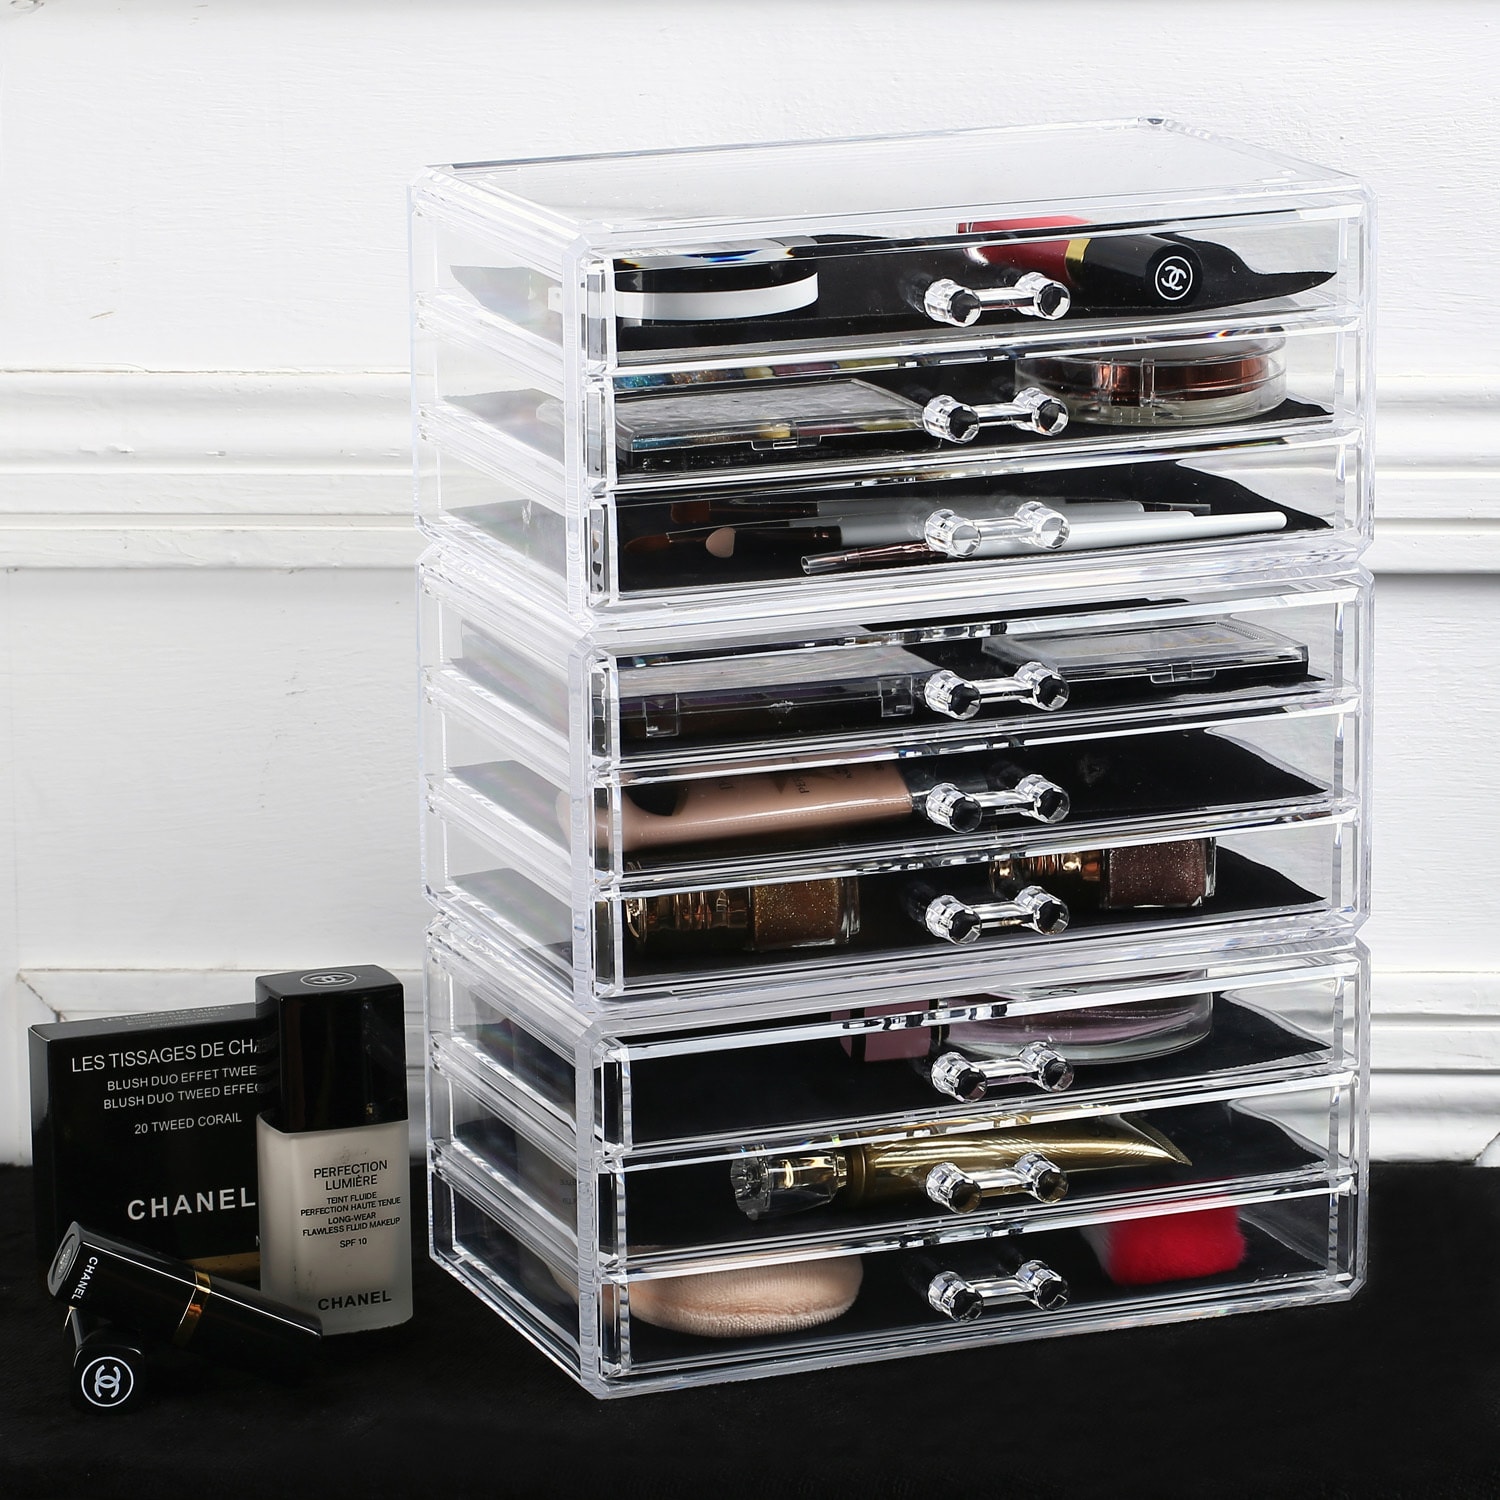 IKEE DESIGN®: Acrylic Makeup Organizer Drawer, Five Pieces Set